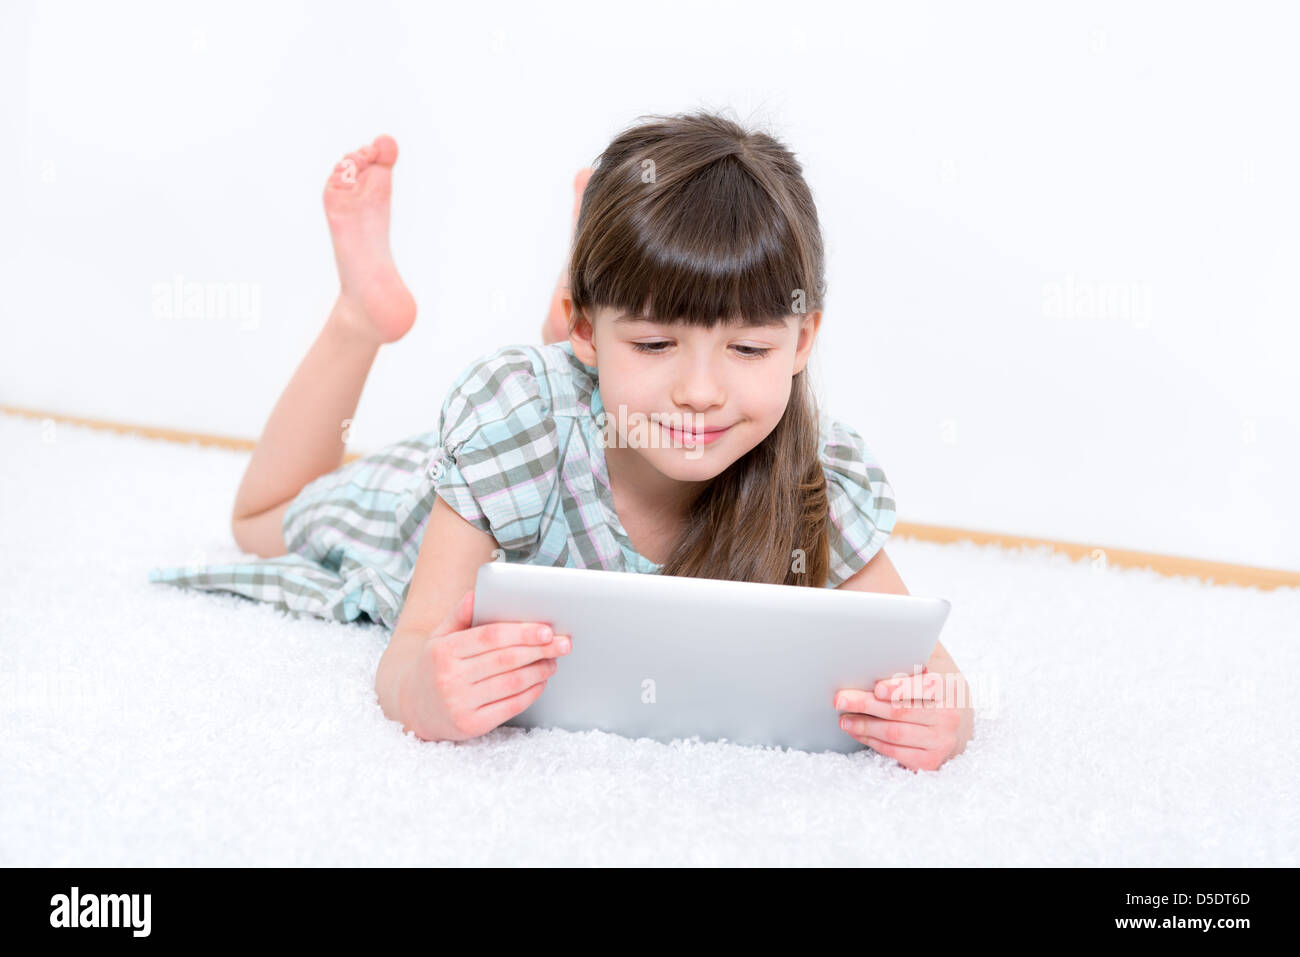 Niña (6-7 años) mirando y jugando con la tableta digital en una habitación blanca. Foto de stock